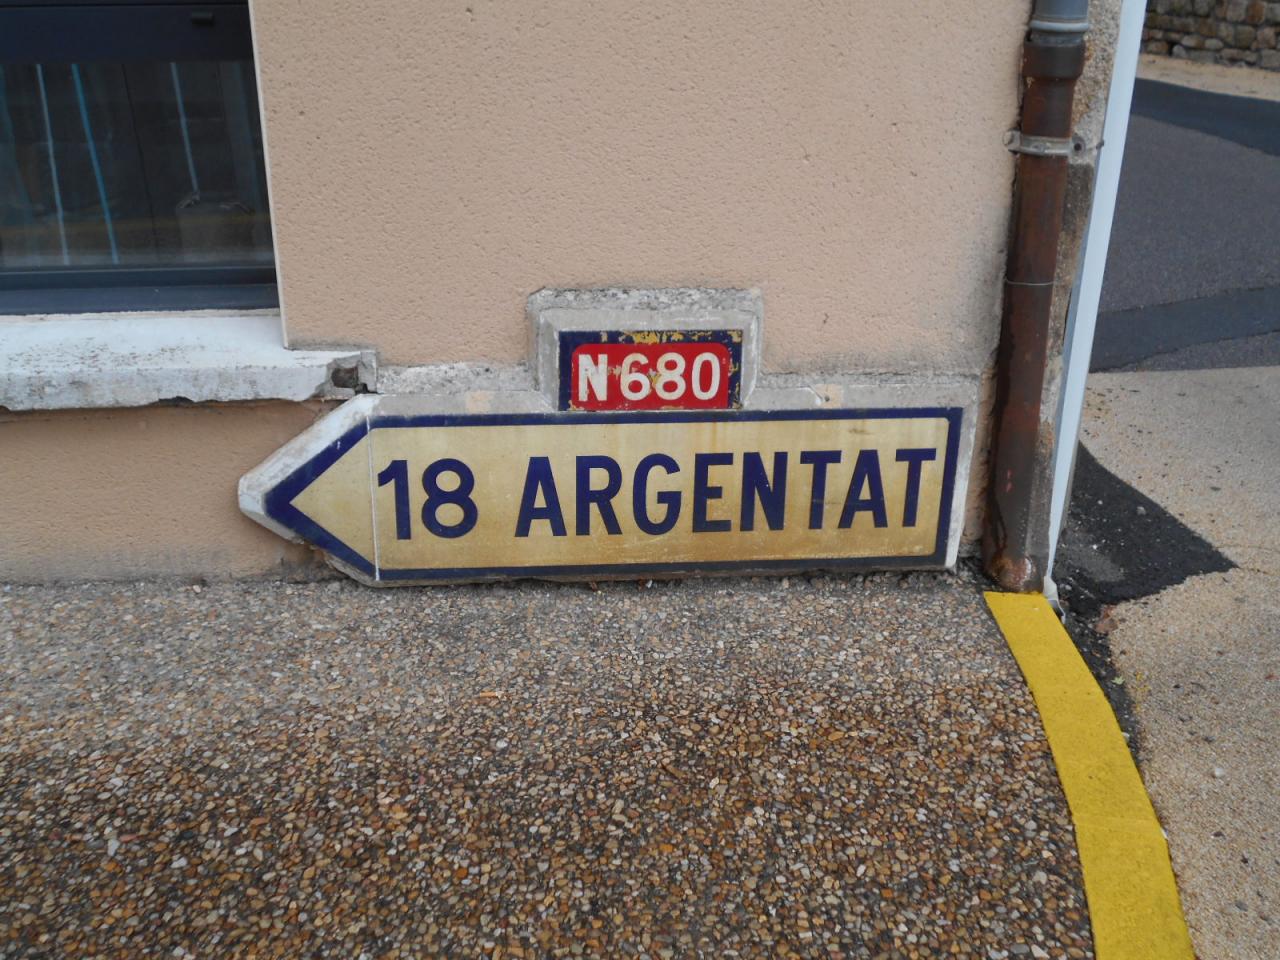 19400 Argentat